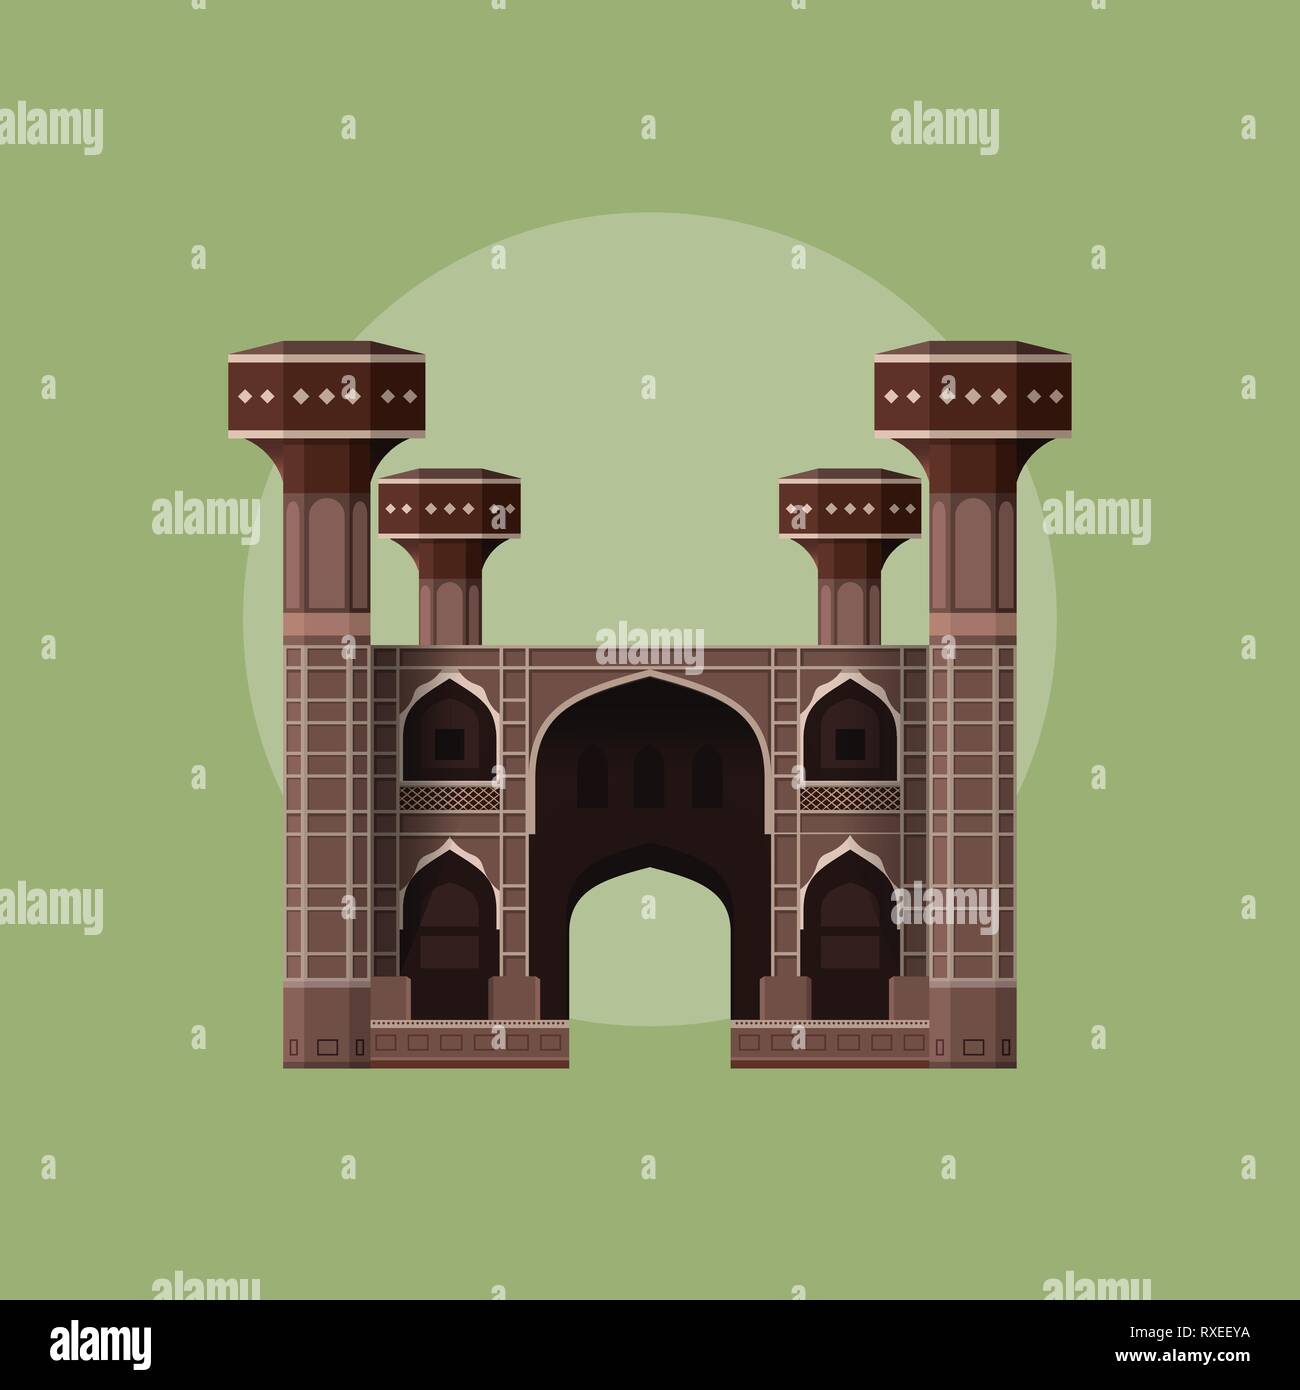 Chauburji - Monument du Pakistan - Lieu historique Illustration de Vecteur